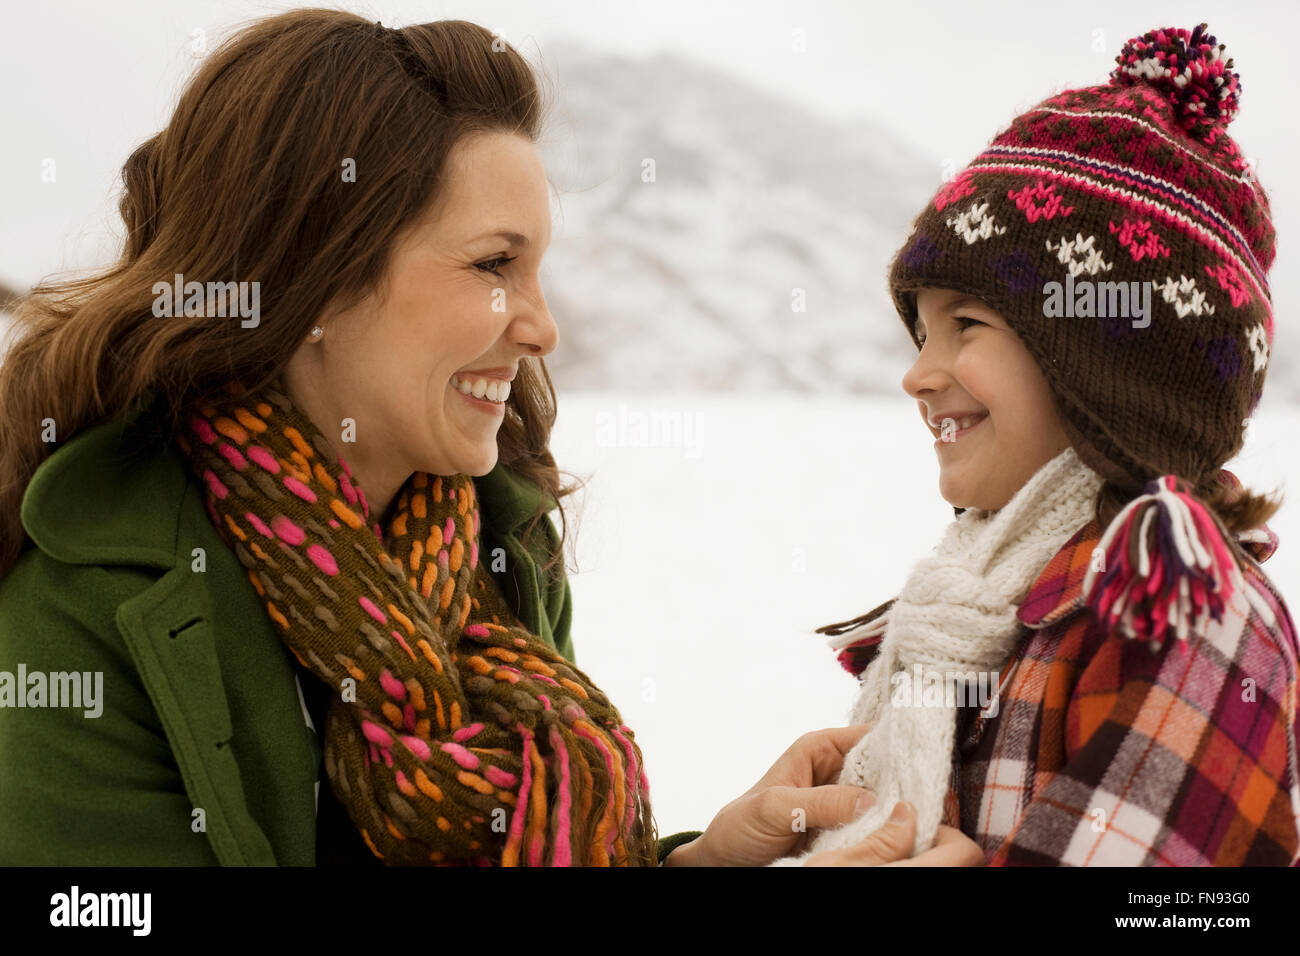 Una donna e un bambino nel bel mezzo delle montagne innevate. Foto Stock